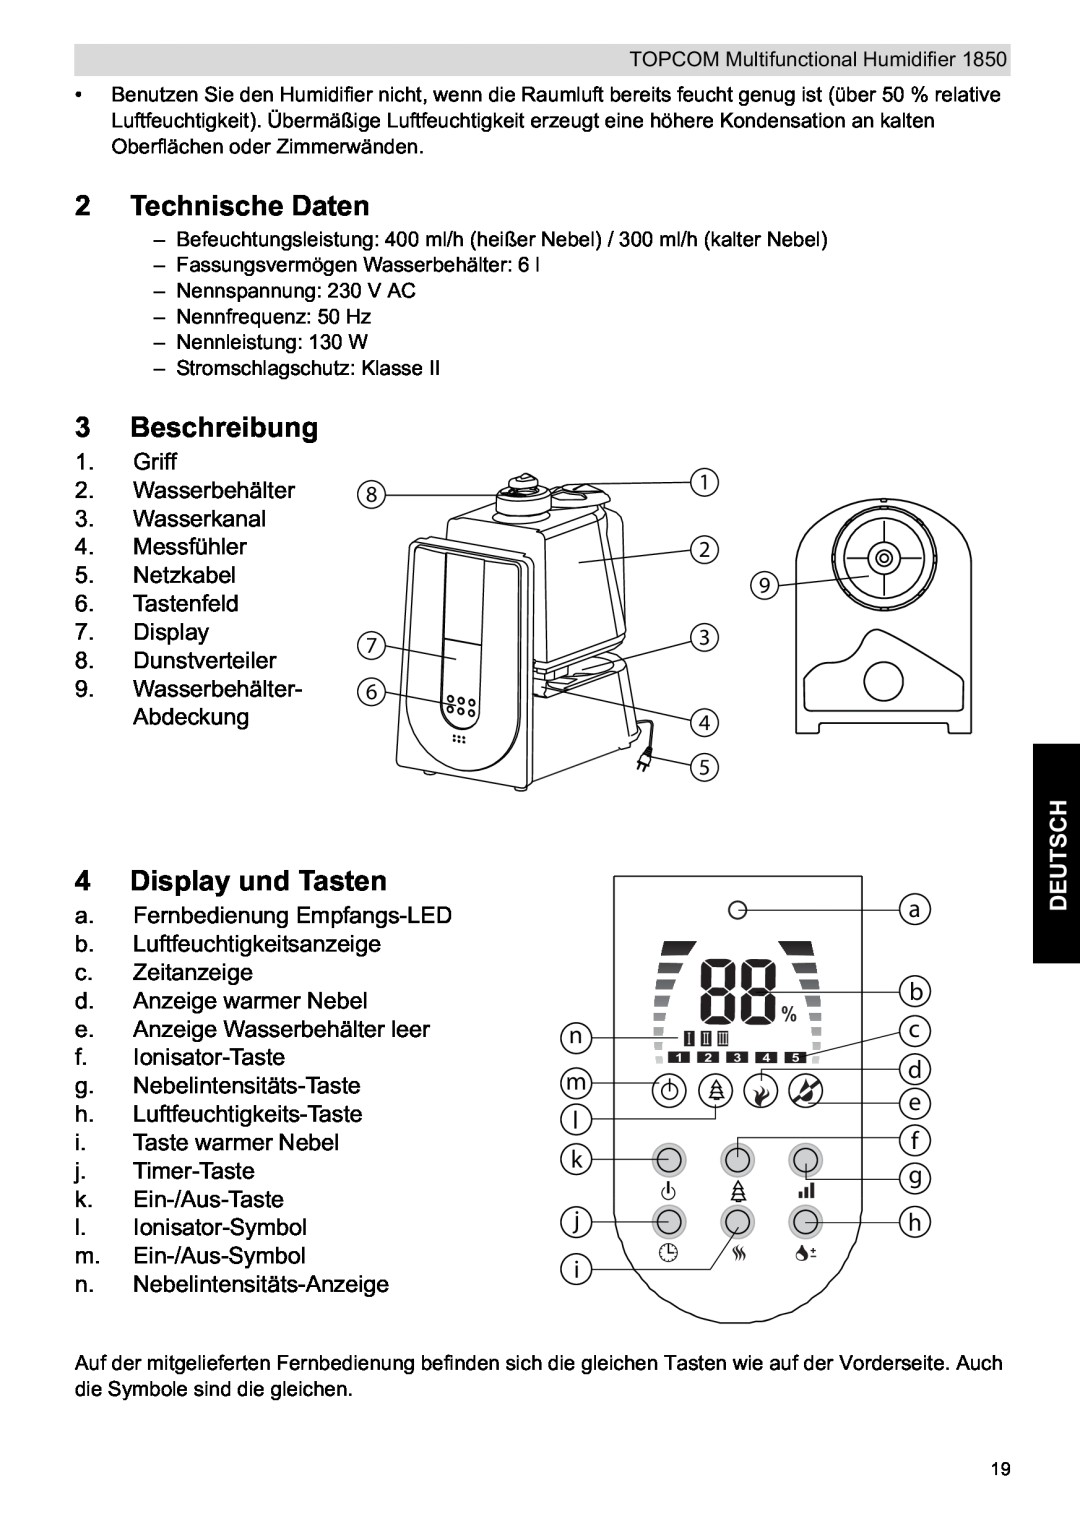 Topcom 1850 manual do utilizador Technische Daten, Beschreibung, Display und Tasten, Deutsch 